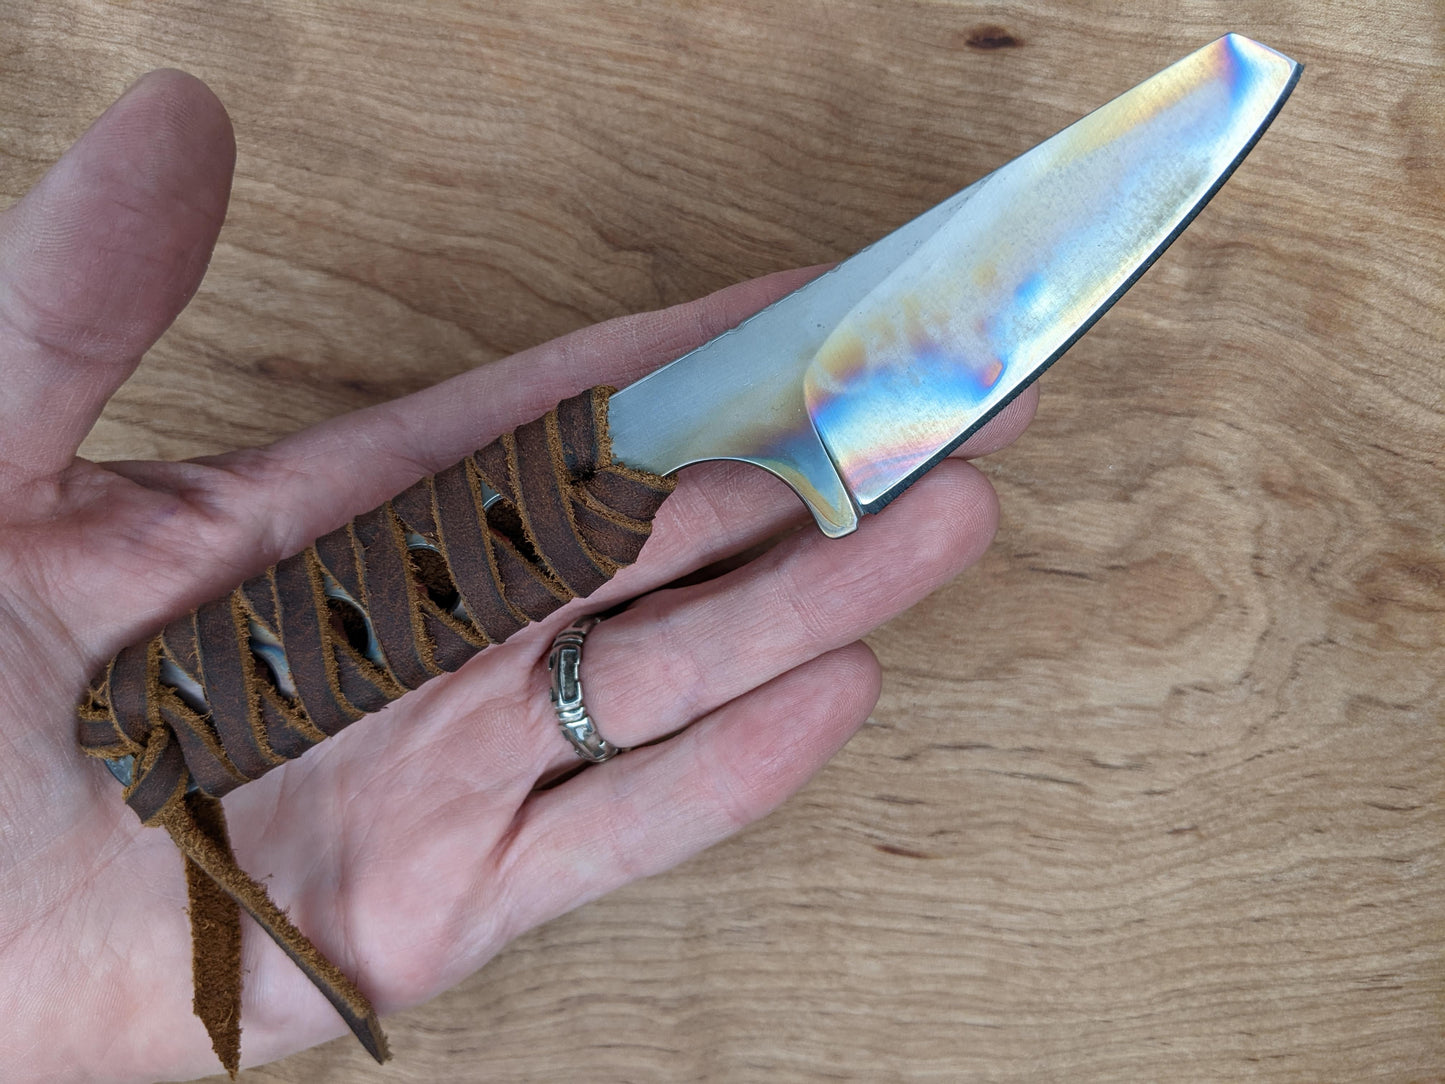 Handmade Knife Model 3 – James Sortor Design